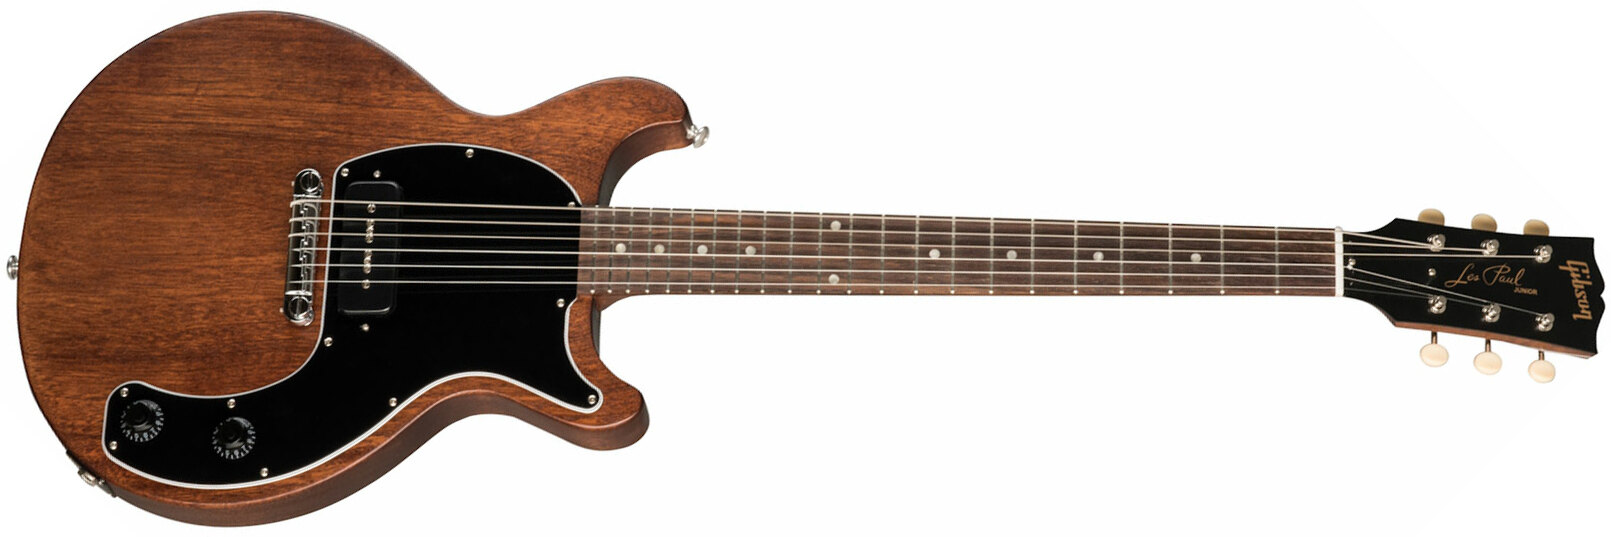 Gibson Les Paul Junior Tribute Dc Modern P90 - Worn Brown - Guitarra eléctrica de doble corte - Main picture